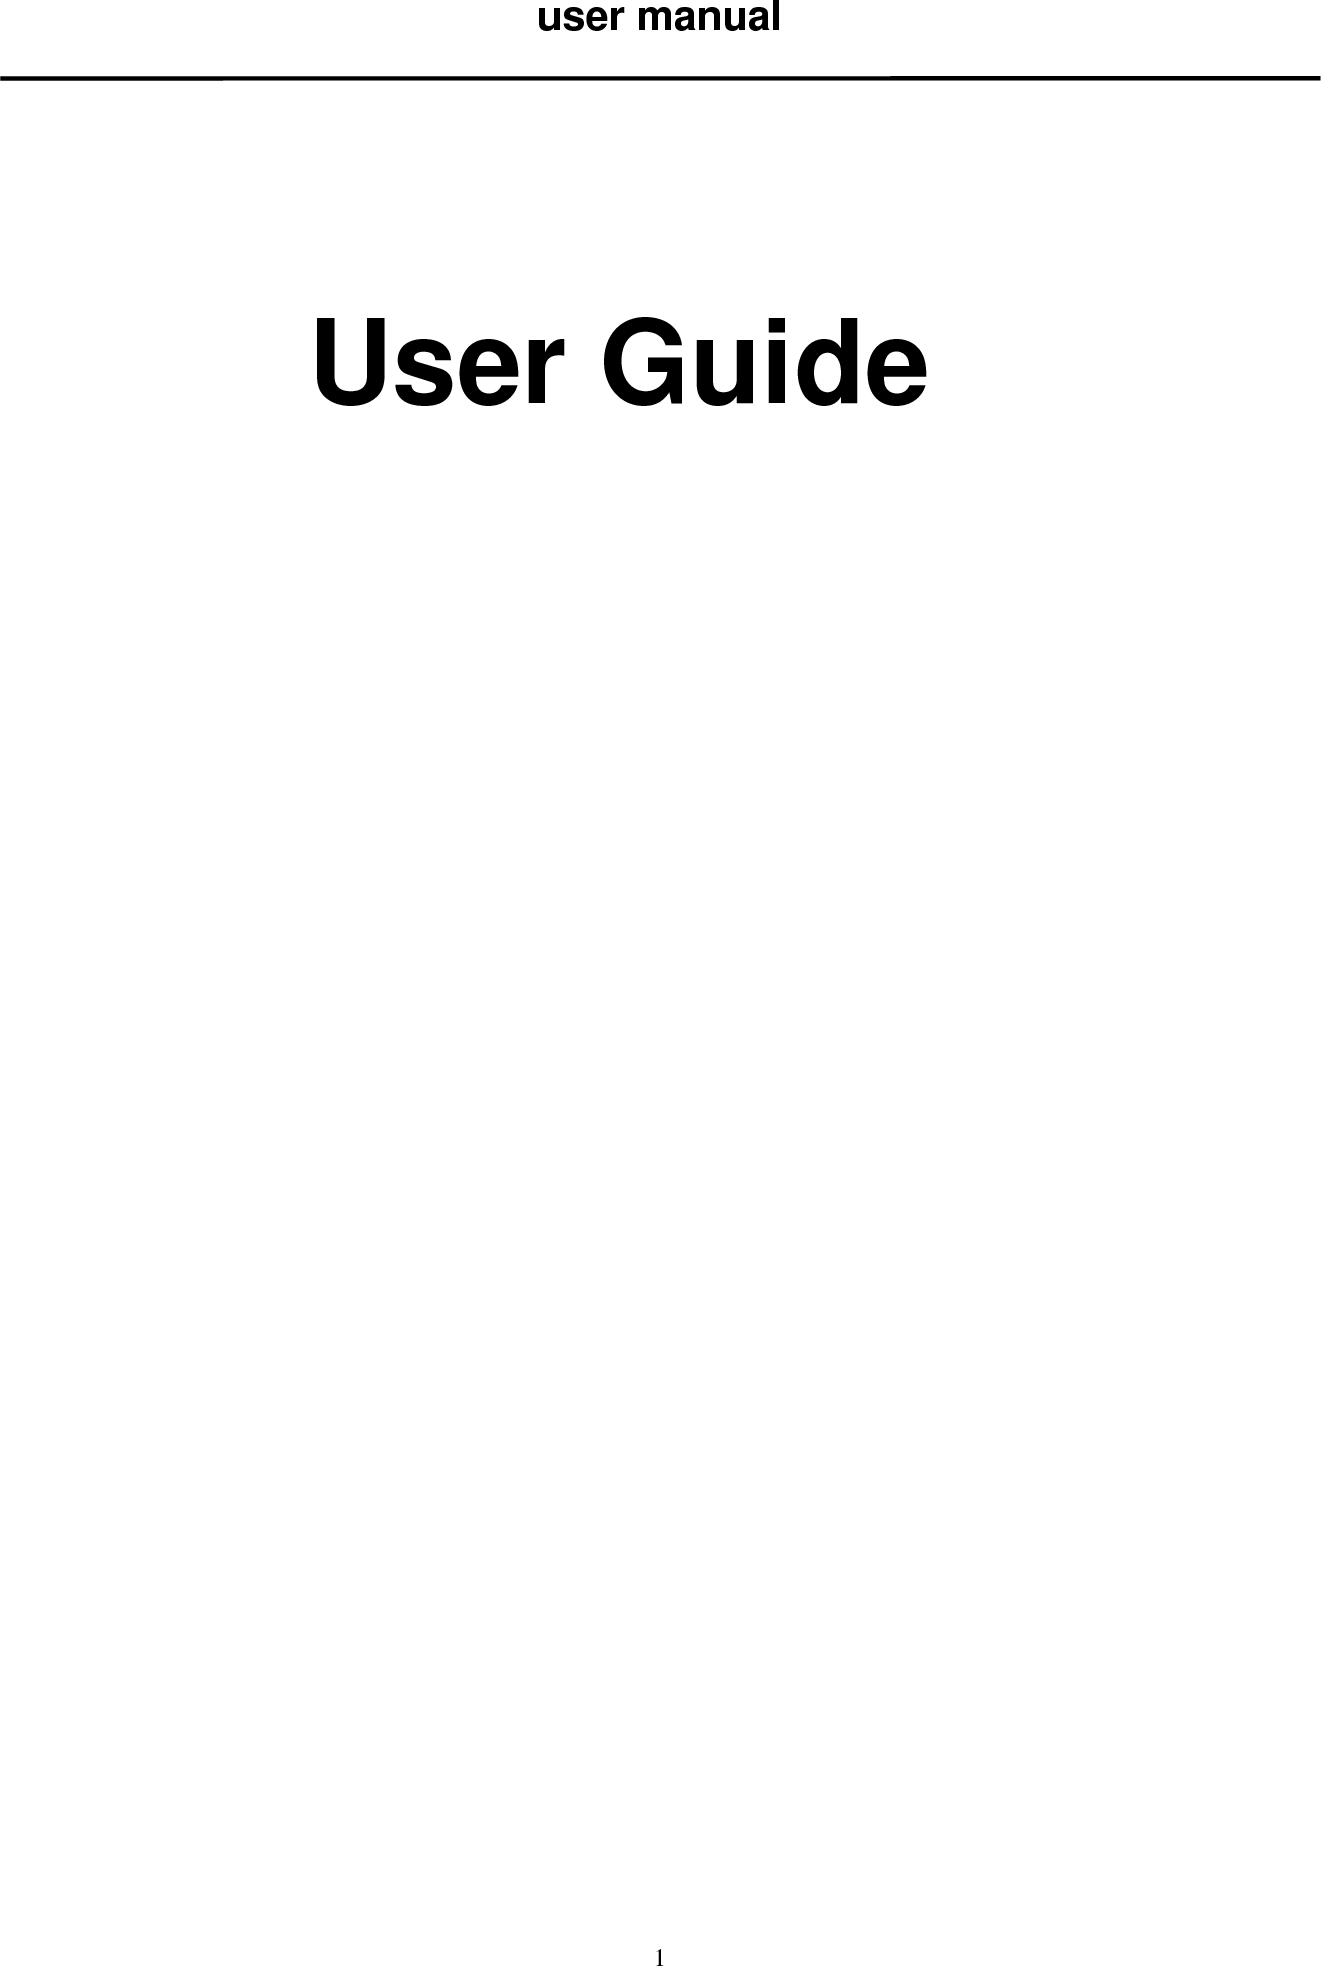   1user manual      User Guide                        